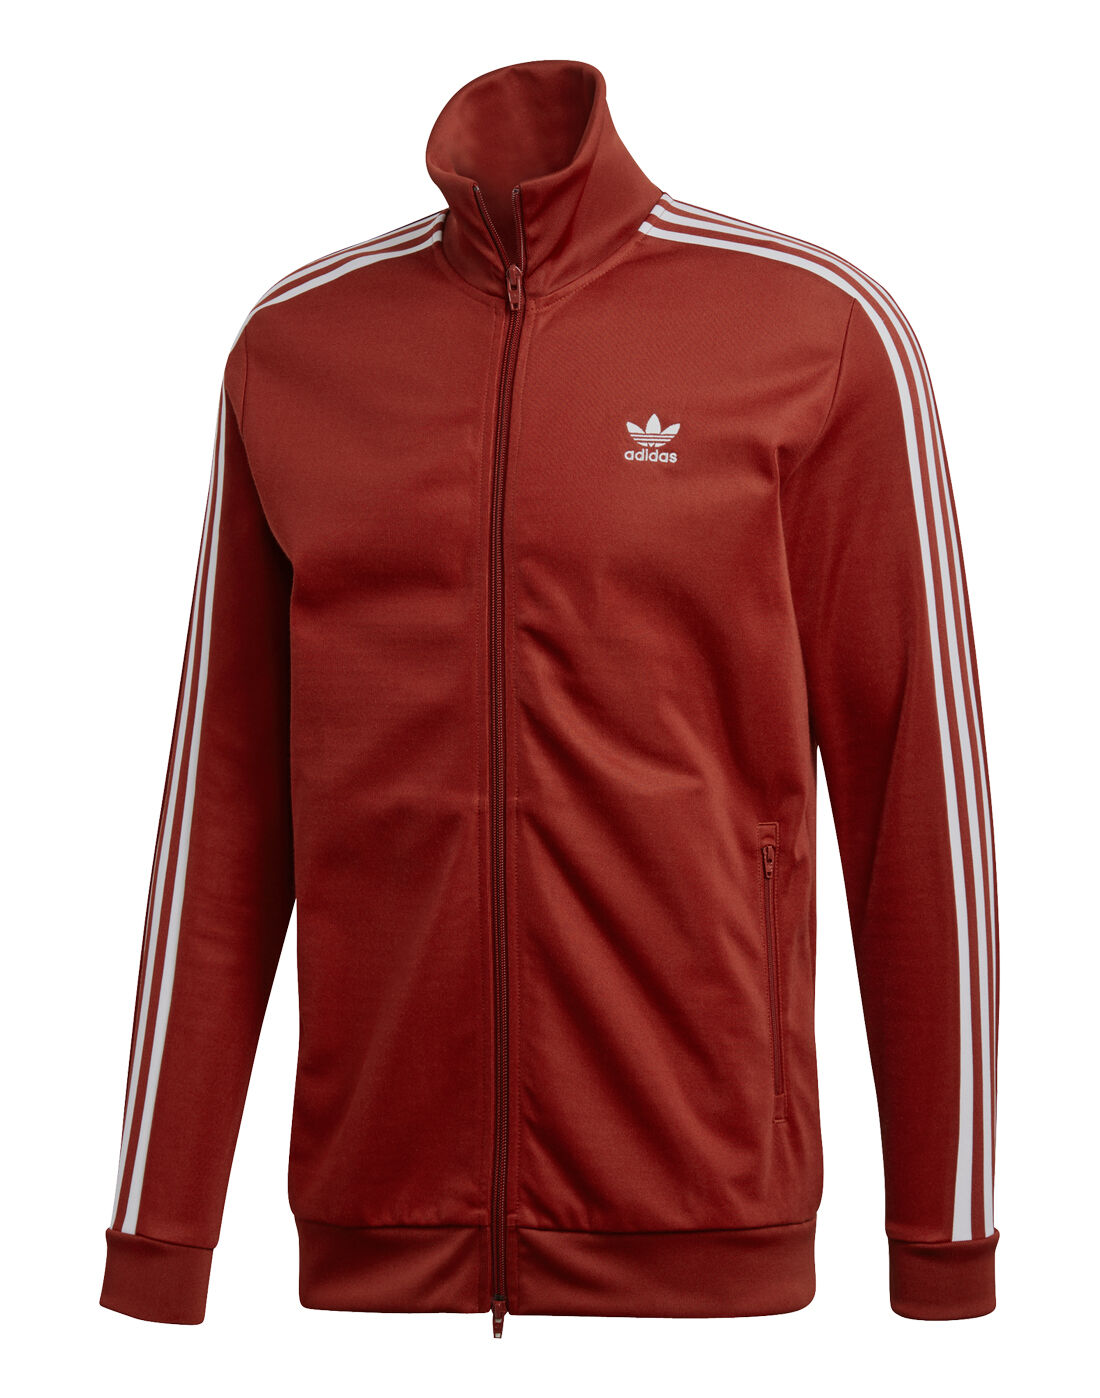 adidas beckenbauer jacket red